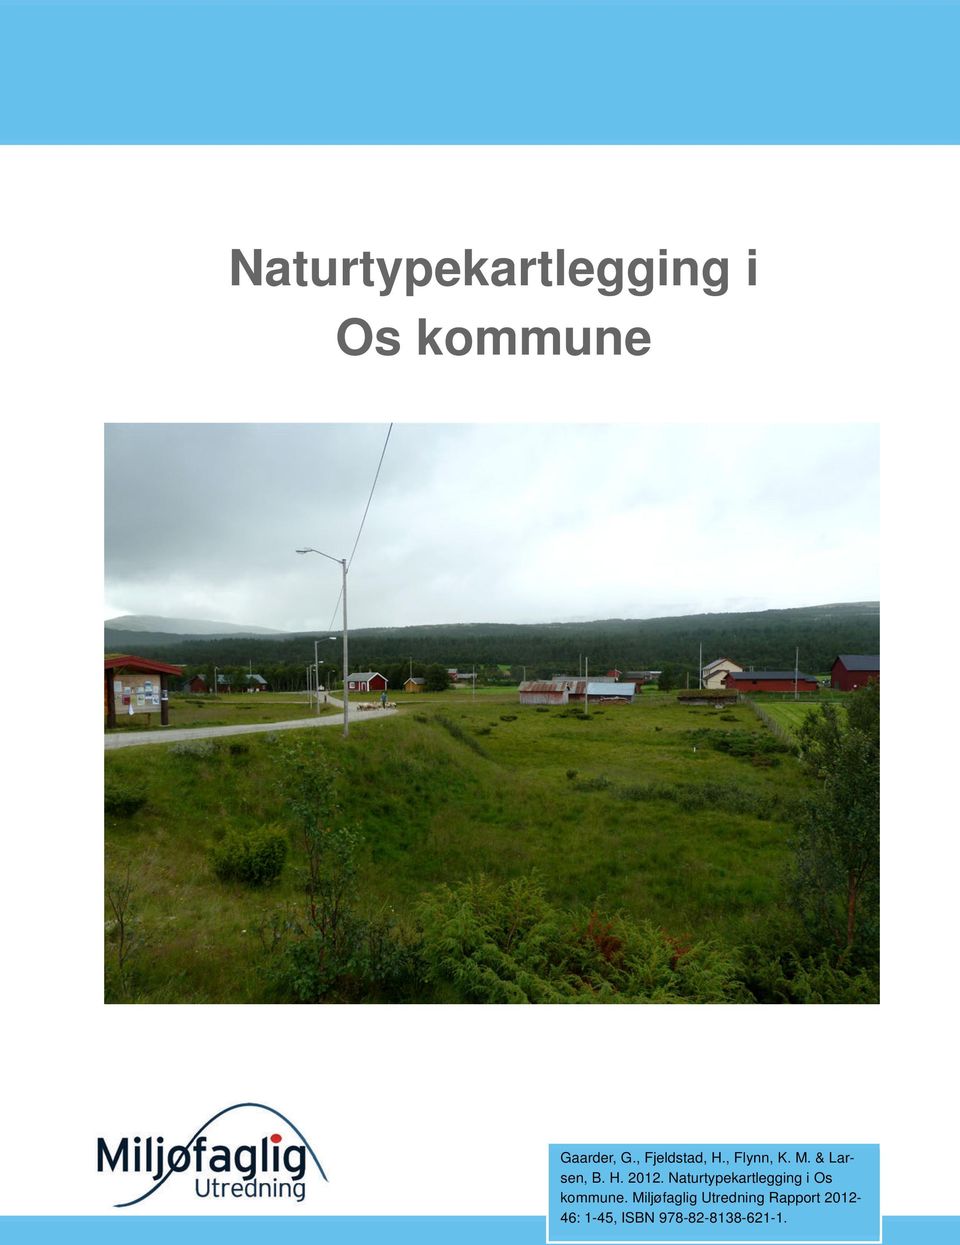 Naturtypekartlegging i Os kommune.